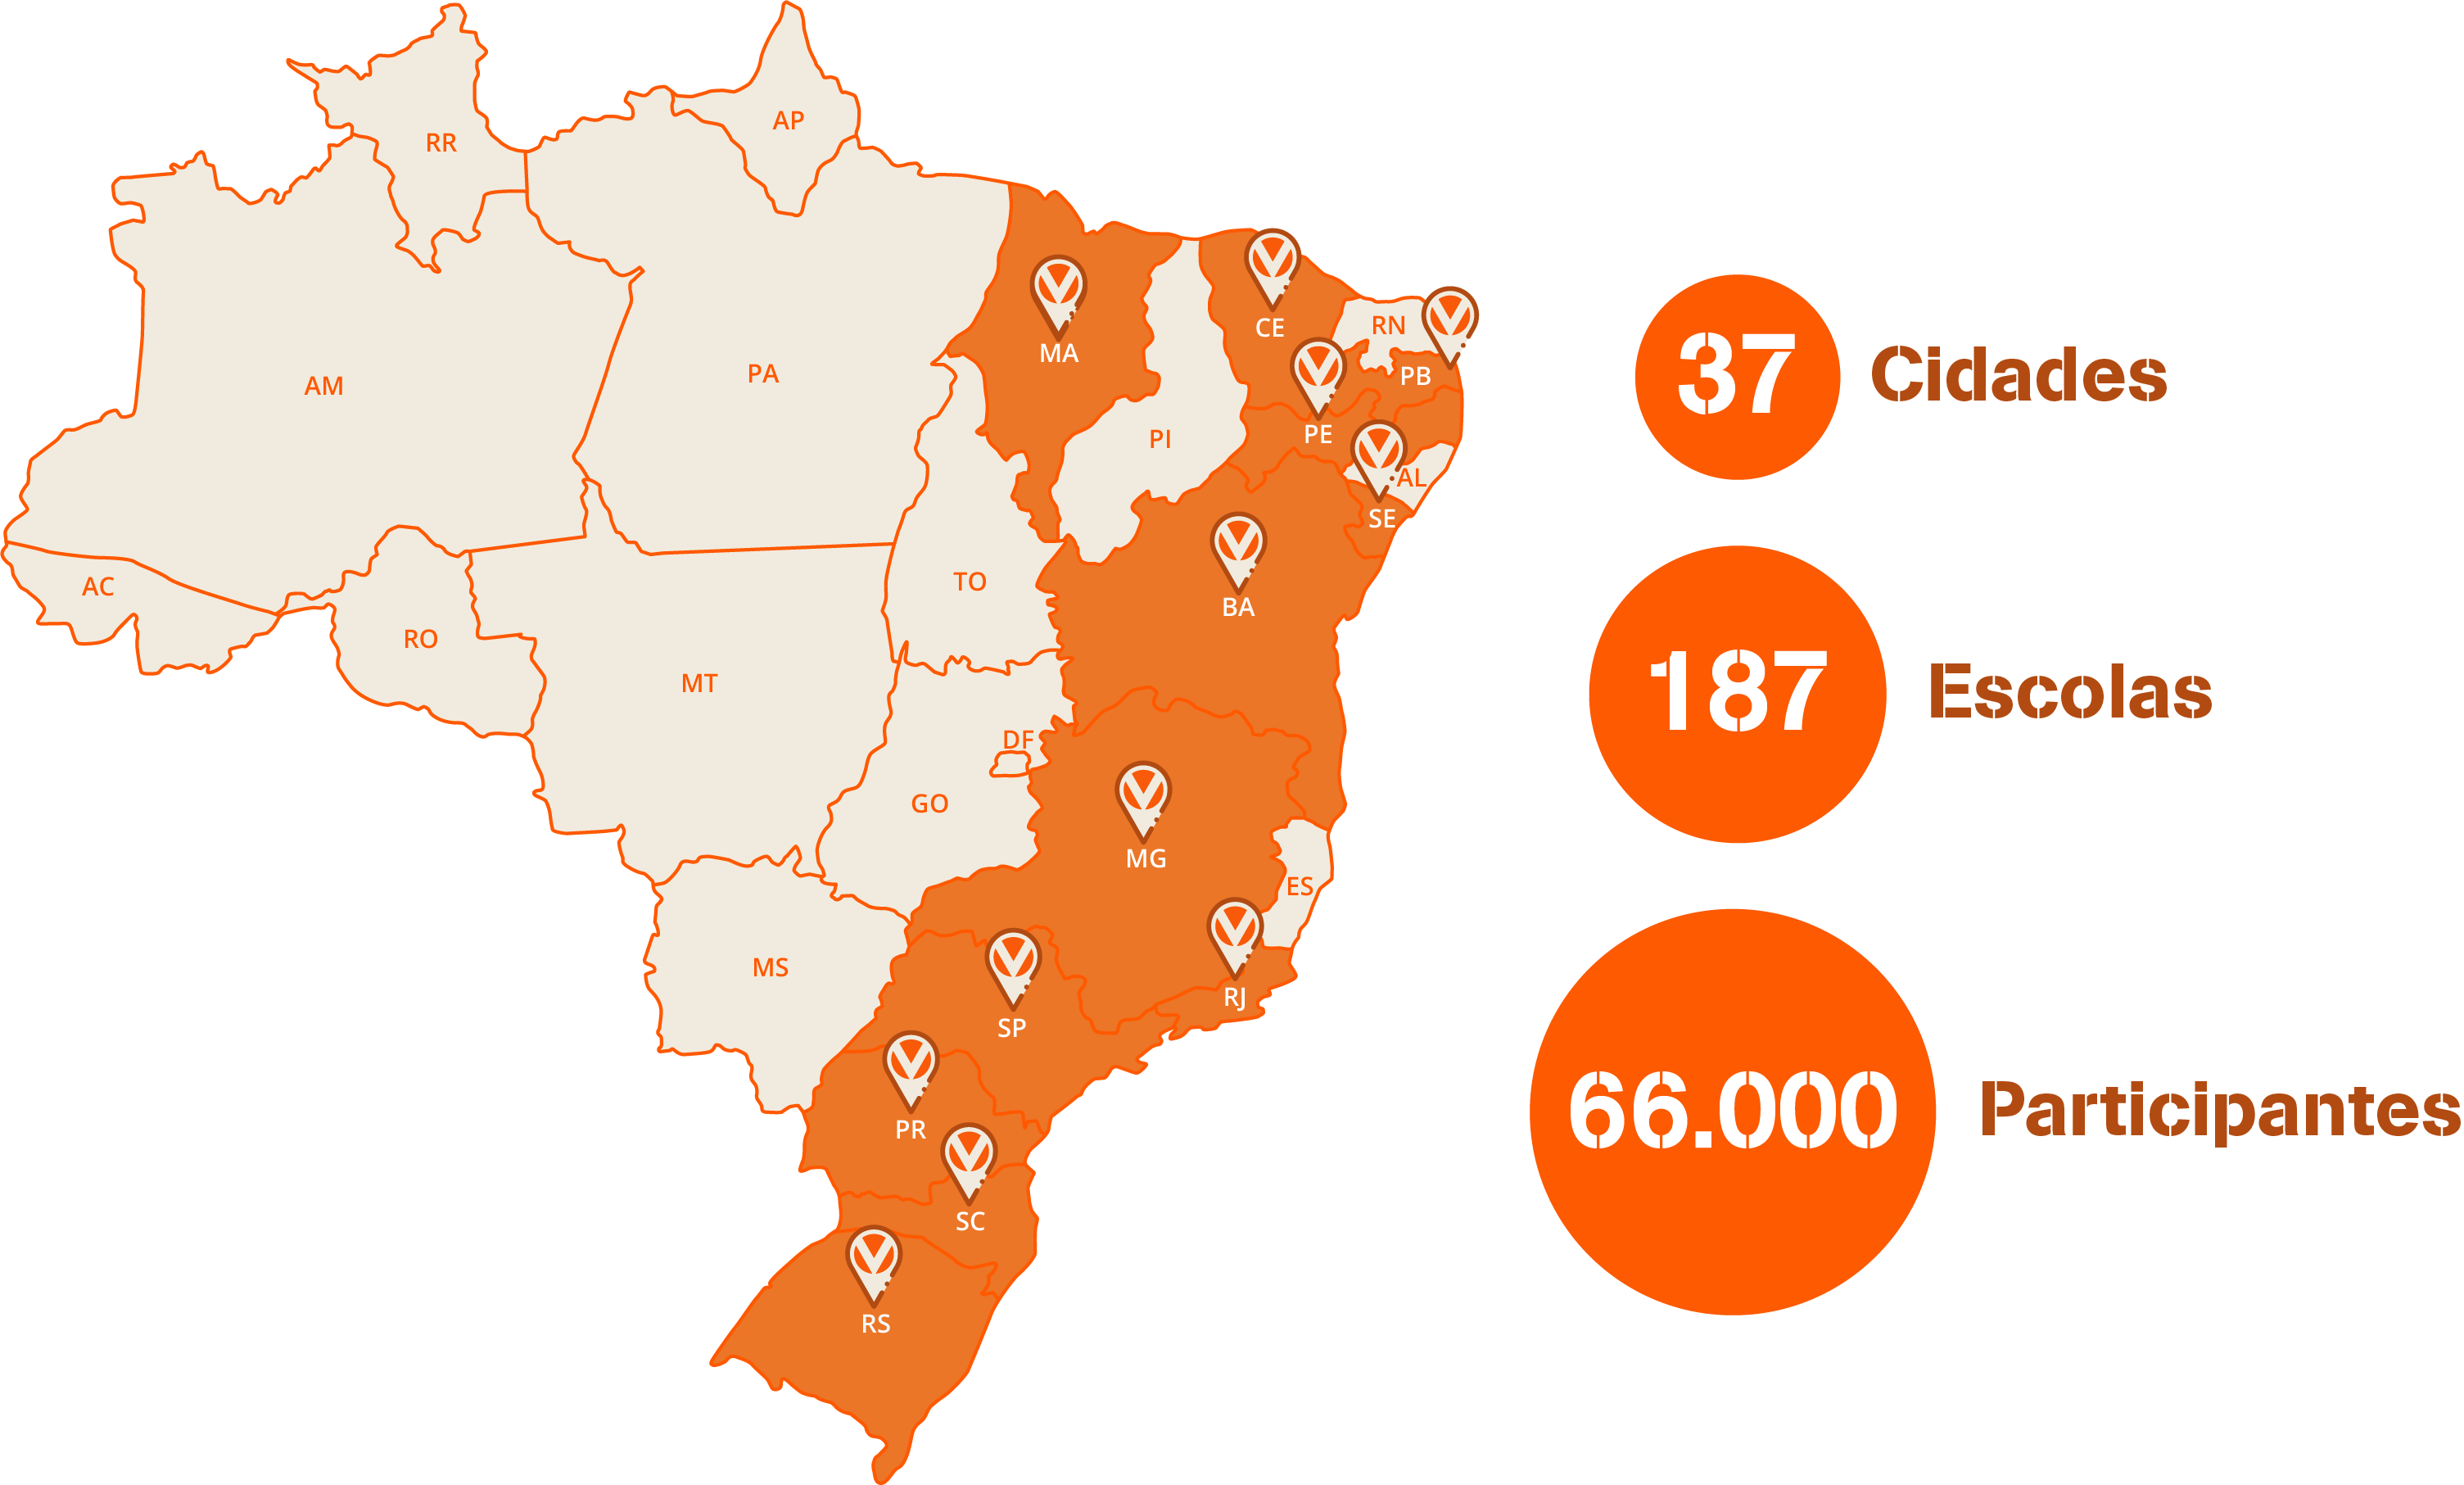 Atuação da VIVEN no território brasileiro